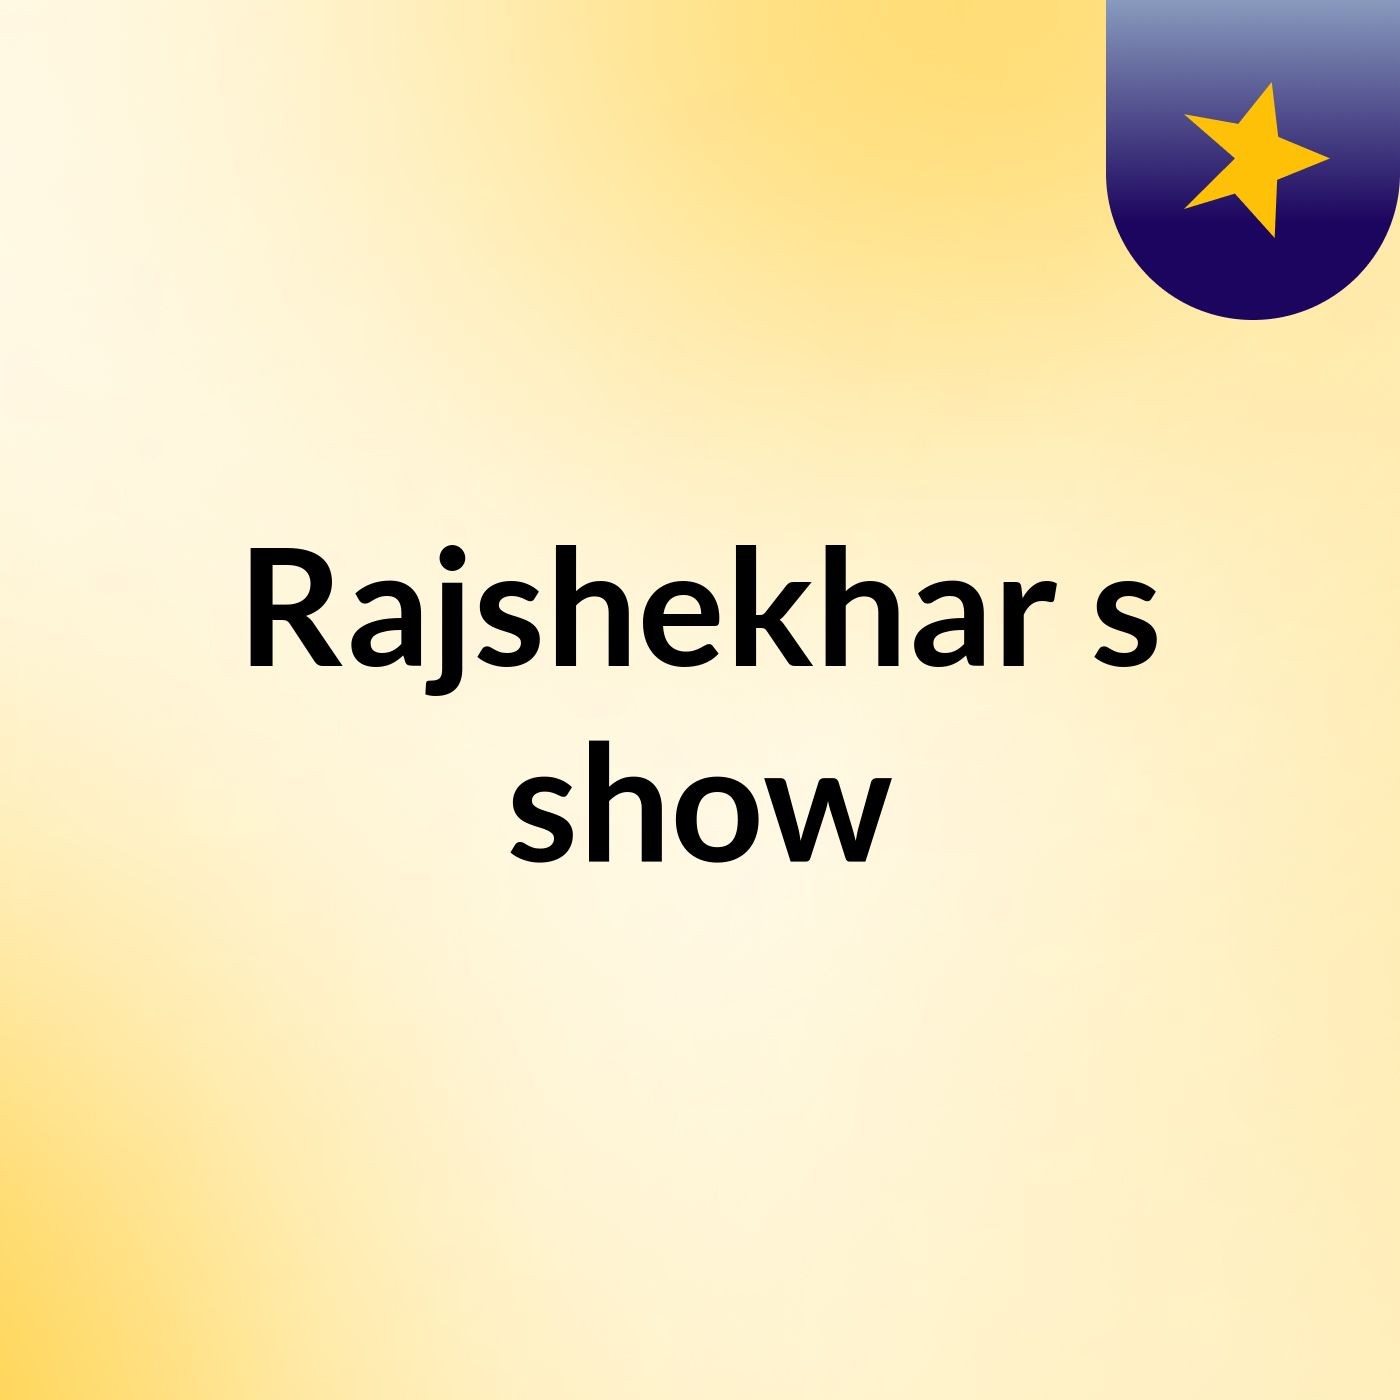 Rajshekhar's show